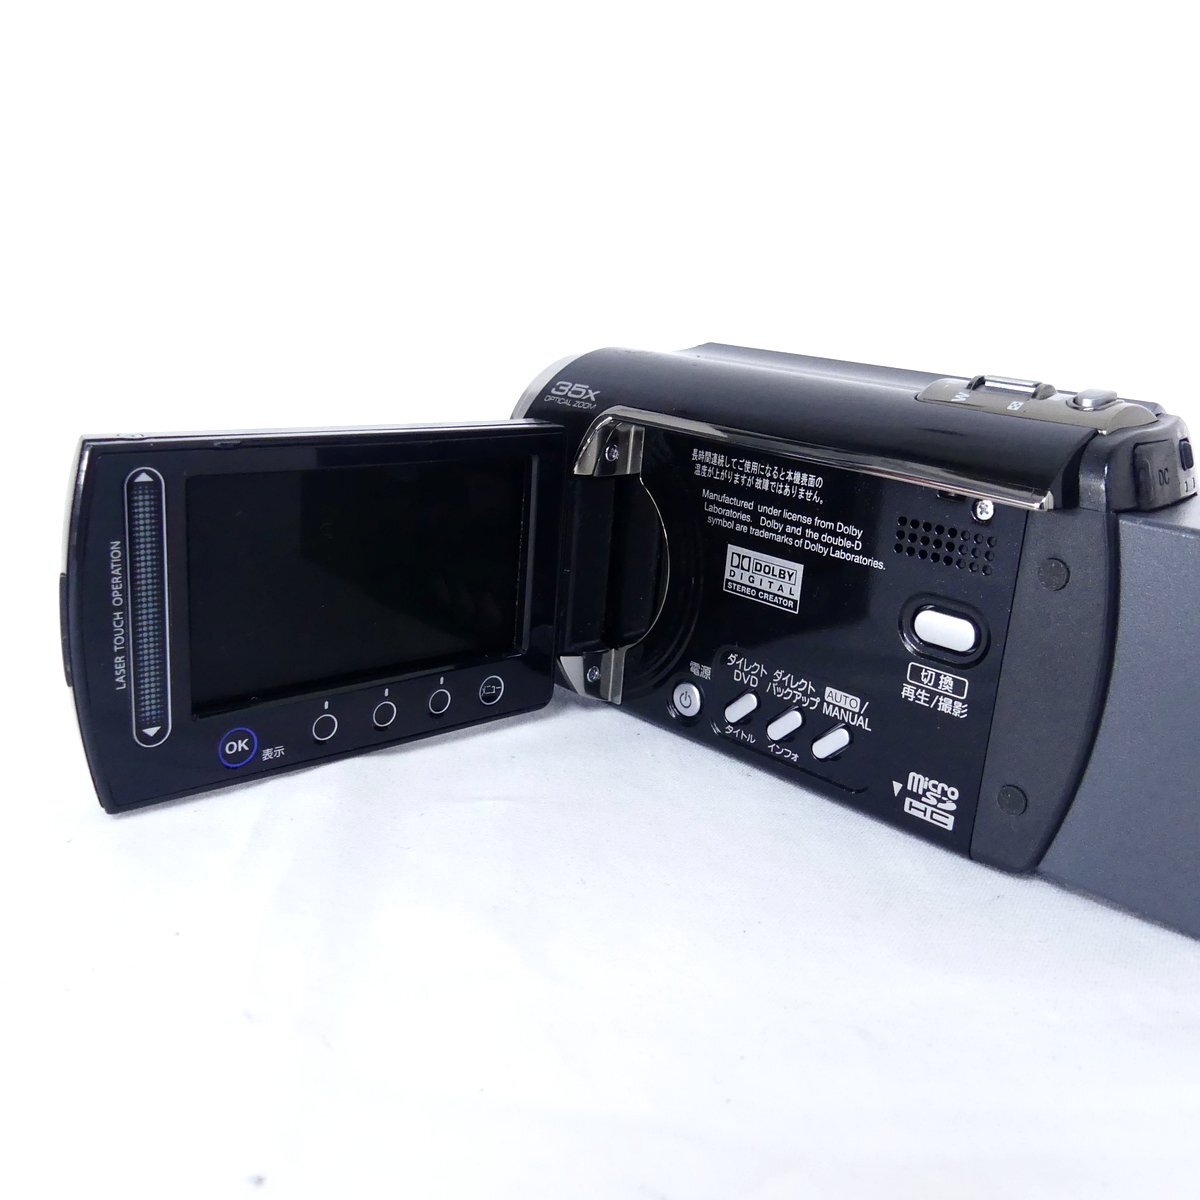 Victor ビクター Everio エブリオ GZ-MG262 ブラック 2008年製 ビデオカメラ 現状品 USED /2404Cの画像5